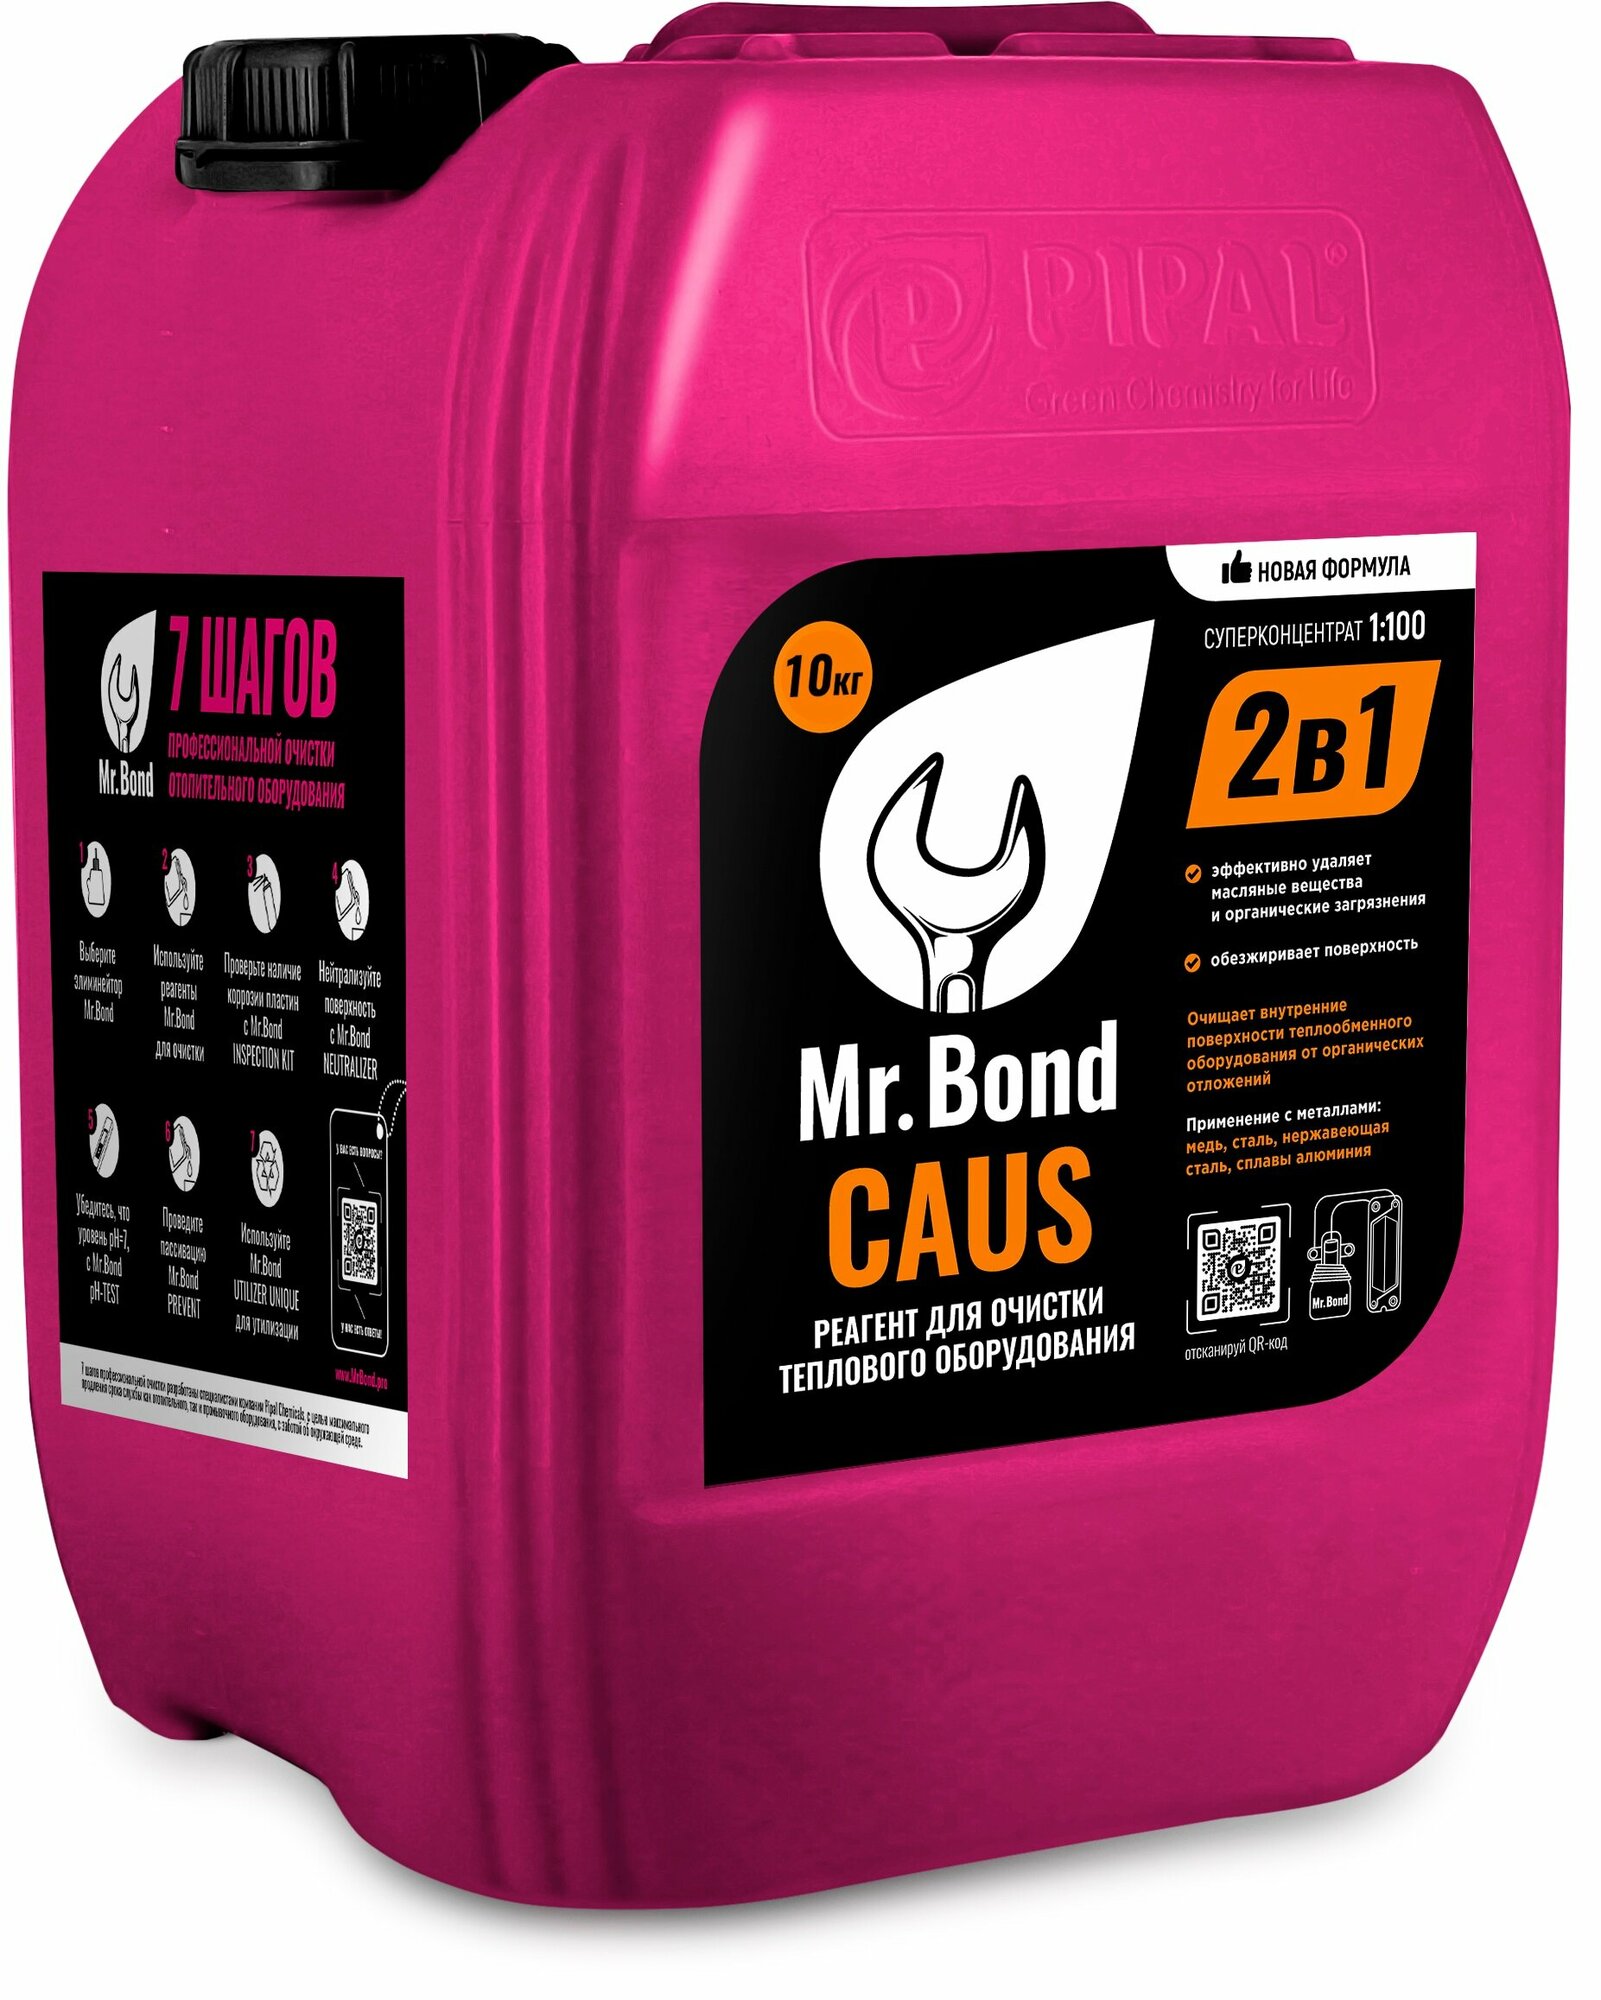 Реагент высококонцентрированный для очистки оборудования от жировых отложений, 10 кг Mr. Bond® CAUS